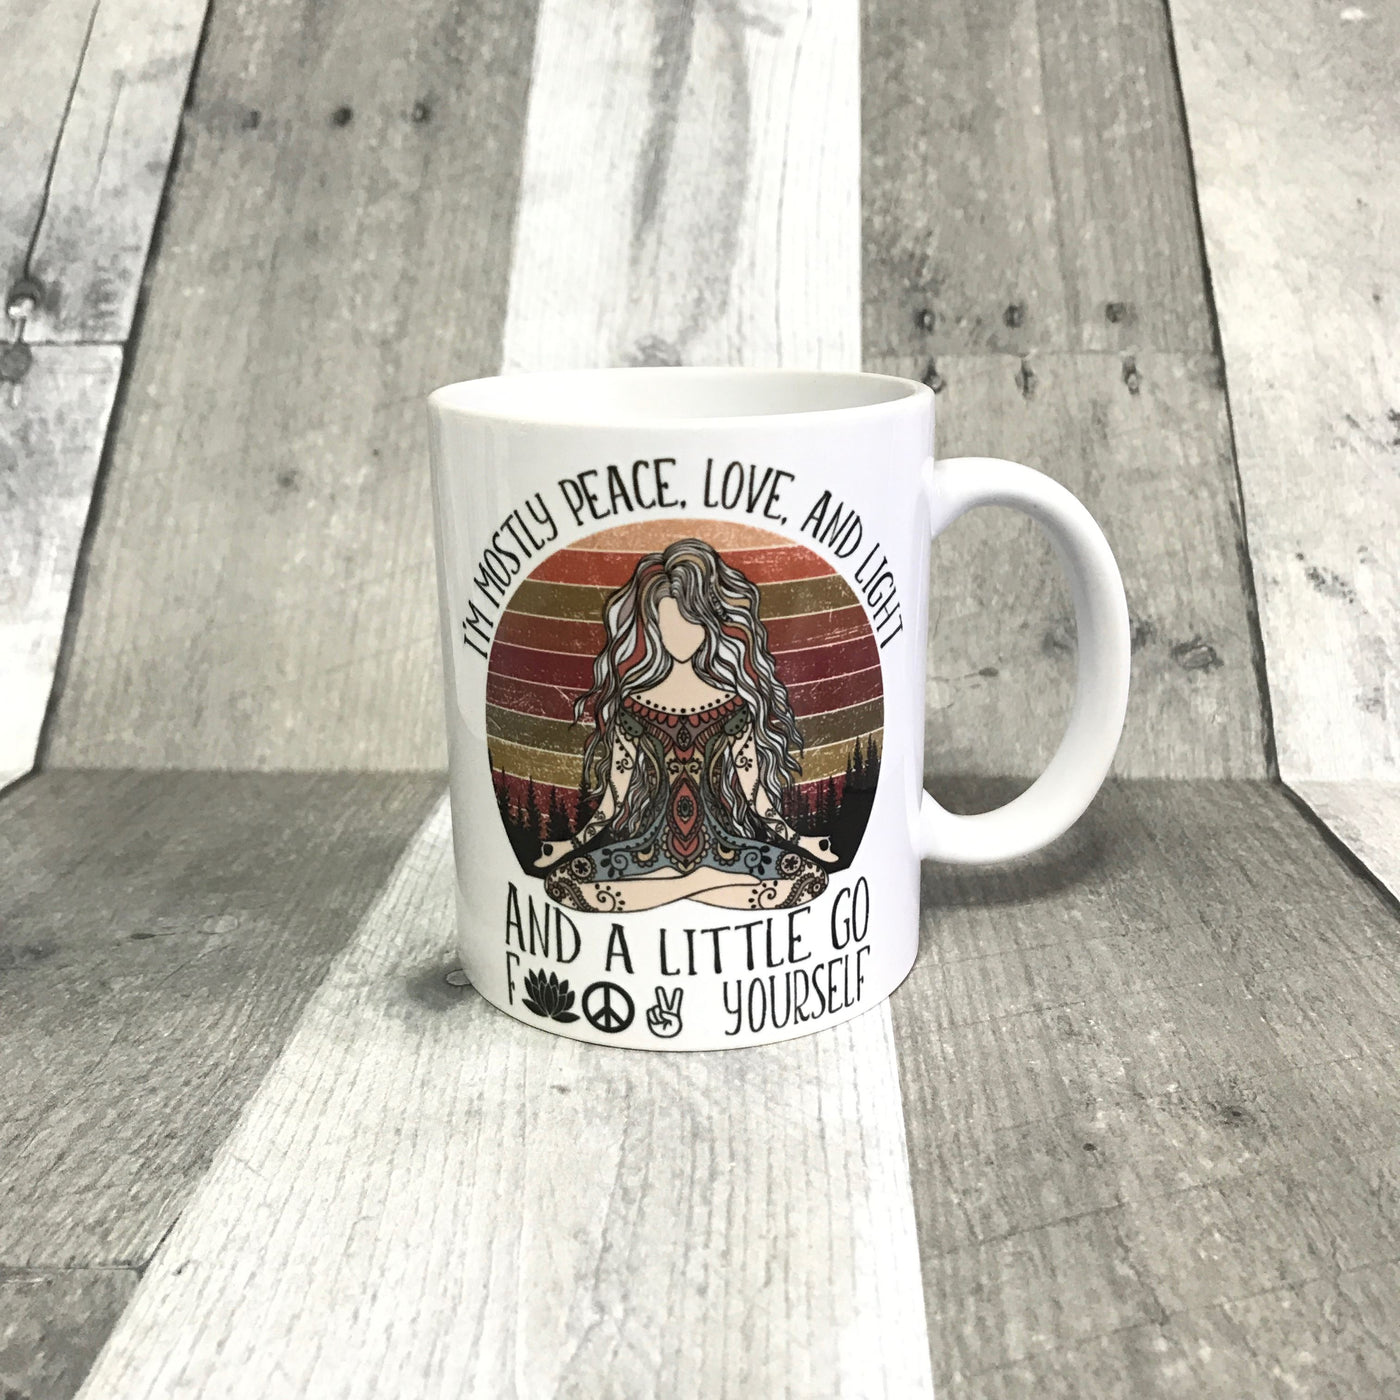 "Mostly Peace, Love, and Light" mug mug The Teal Bandit 